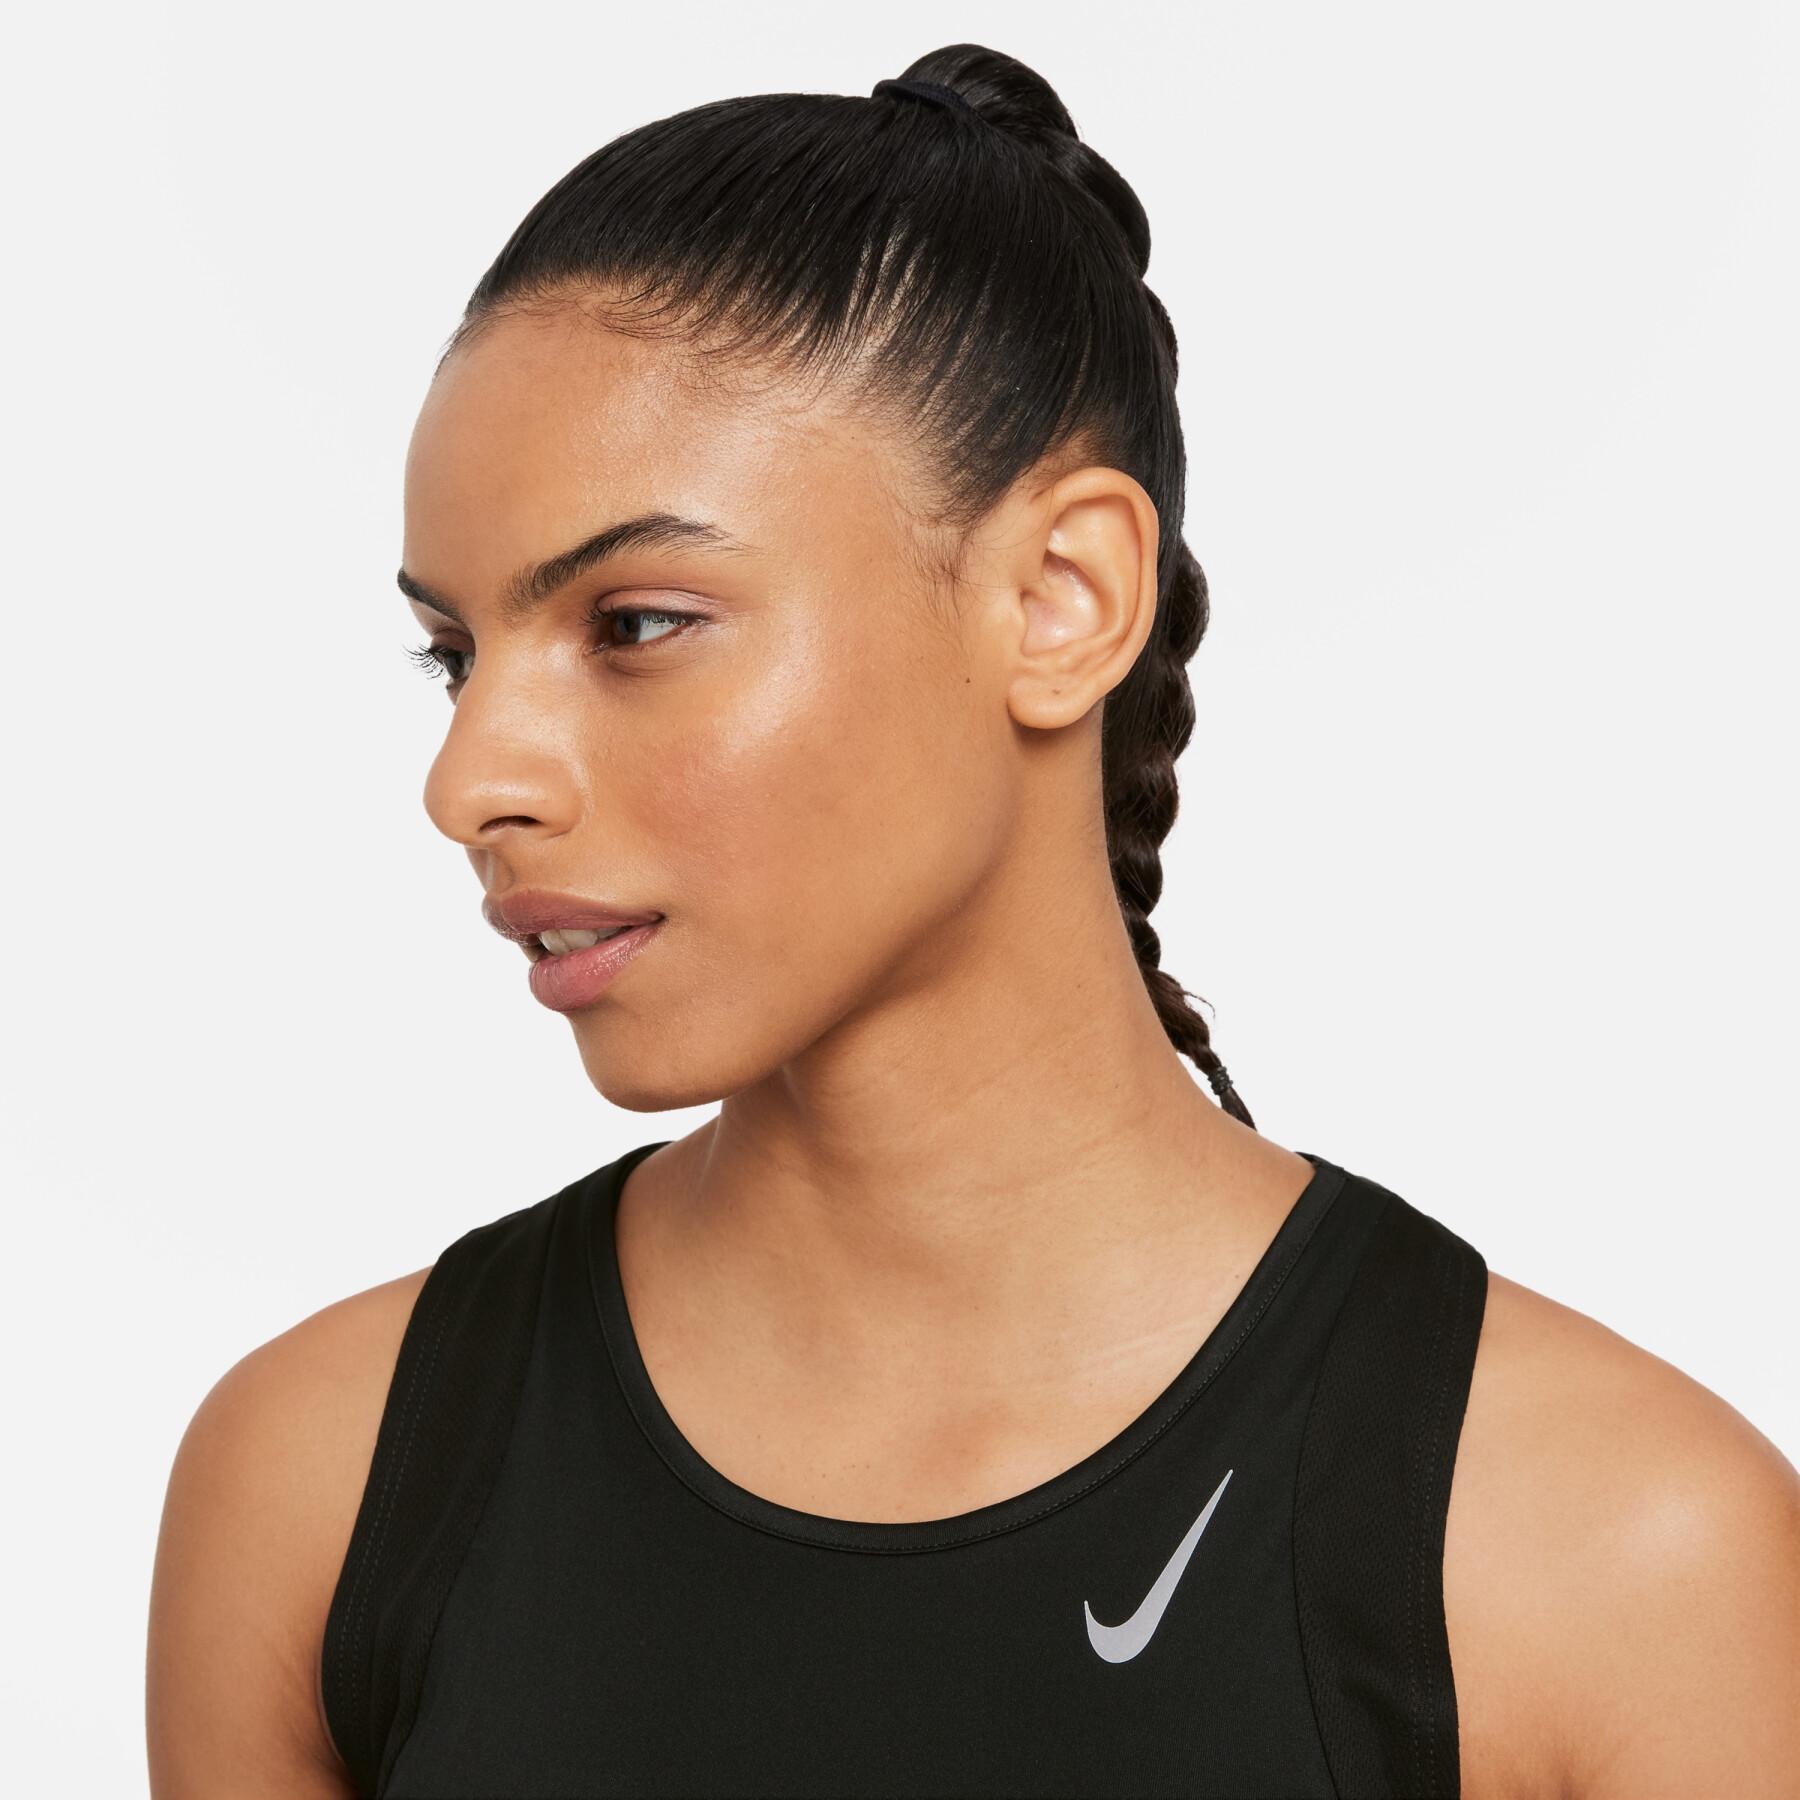 Women's tank top Nike dynamic fit race singlet